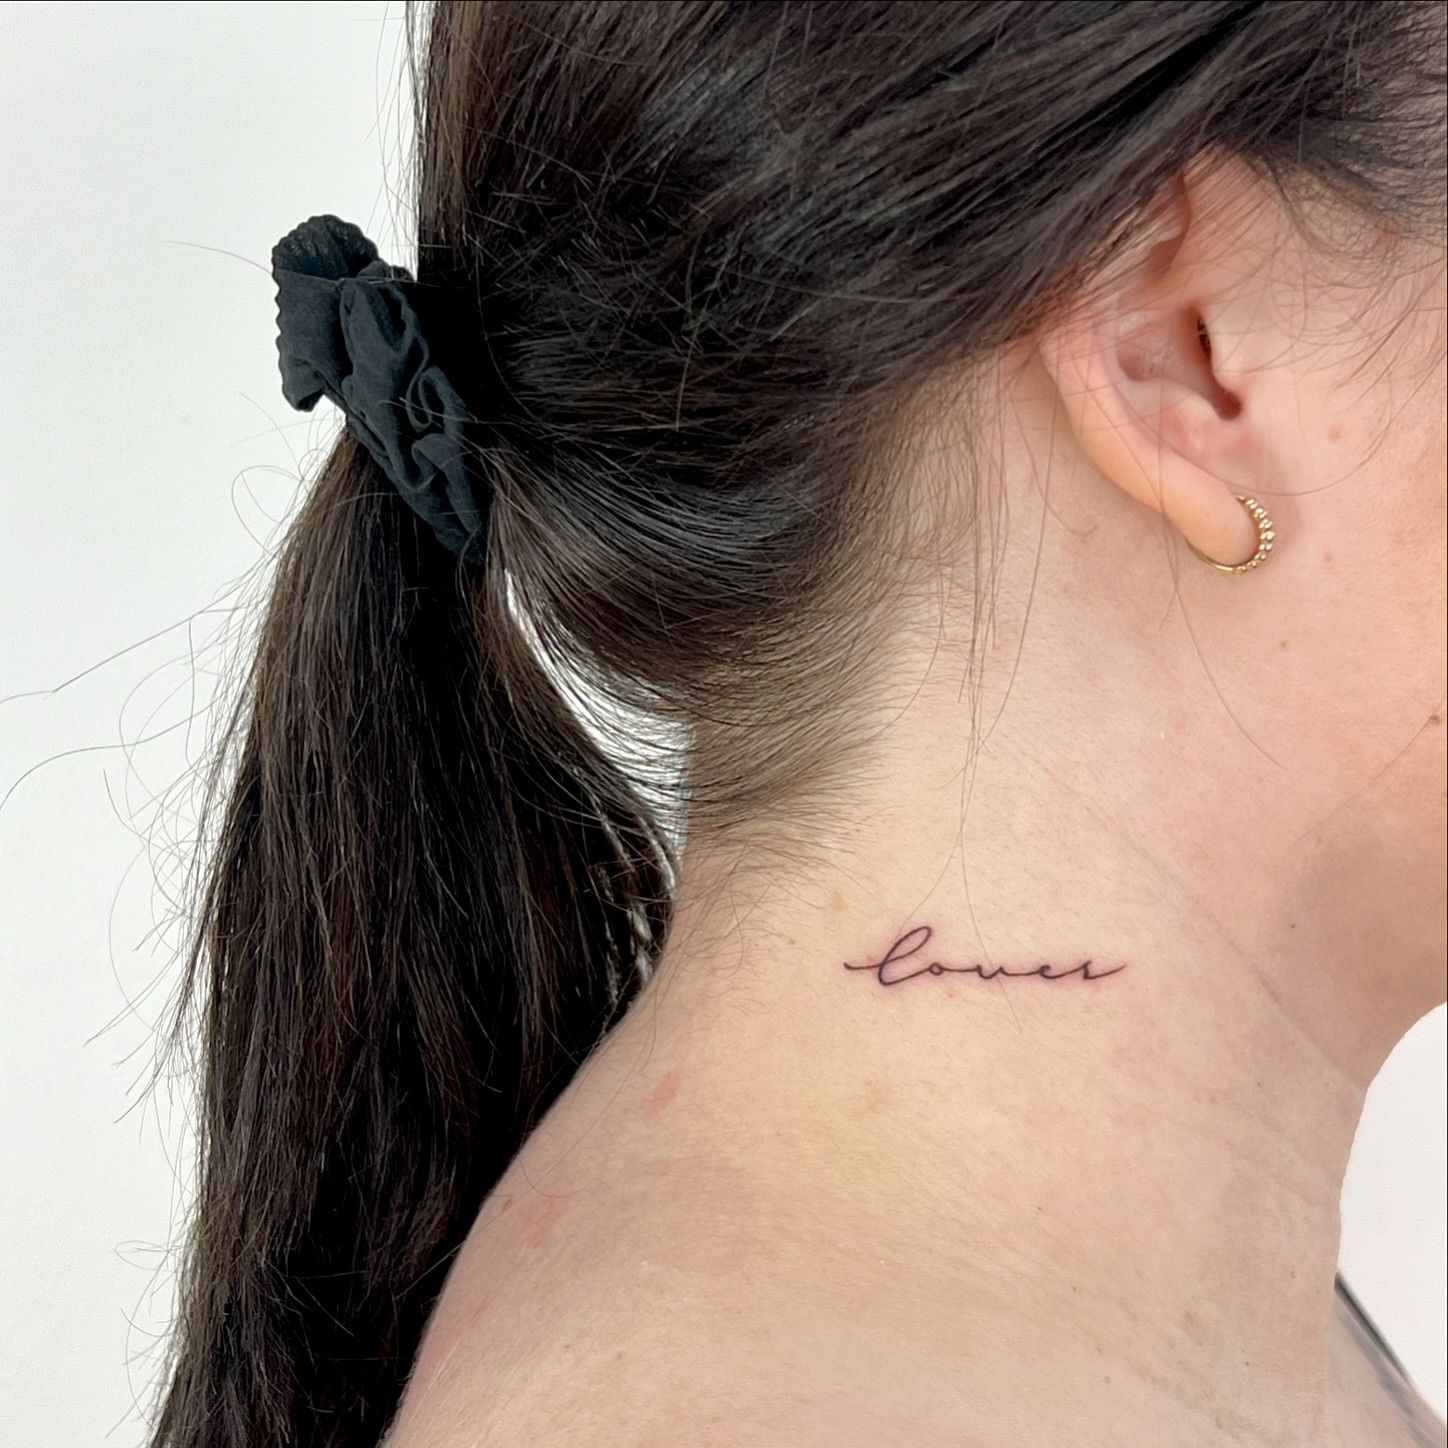 tatuaggio con una sola parola